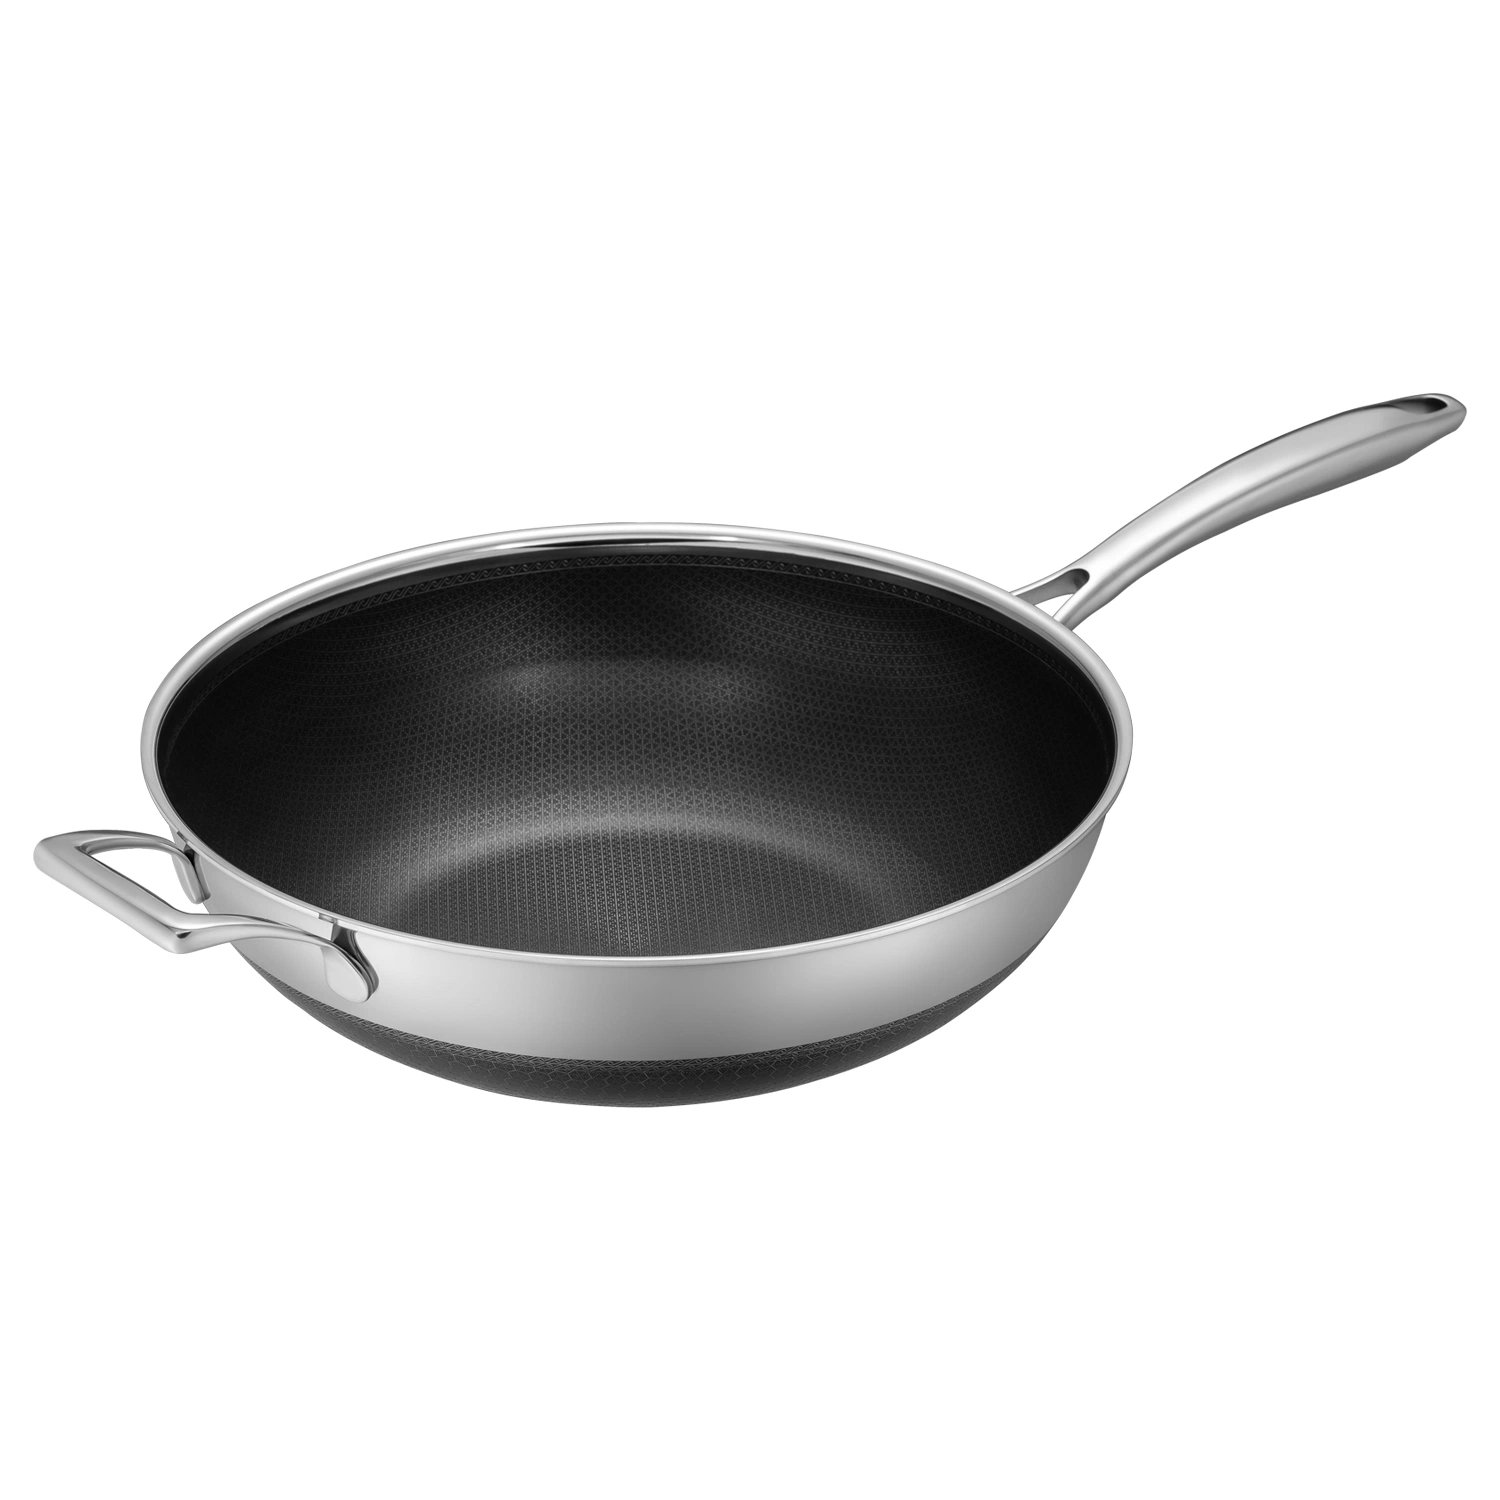 Venta caliente Cookware Acero inoxidable antiadherente Doble capas de revestimiento Skillet Pan